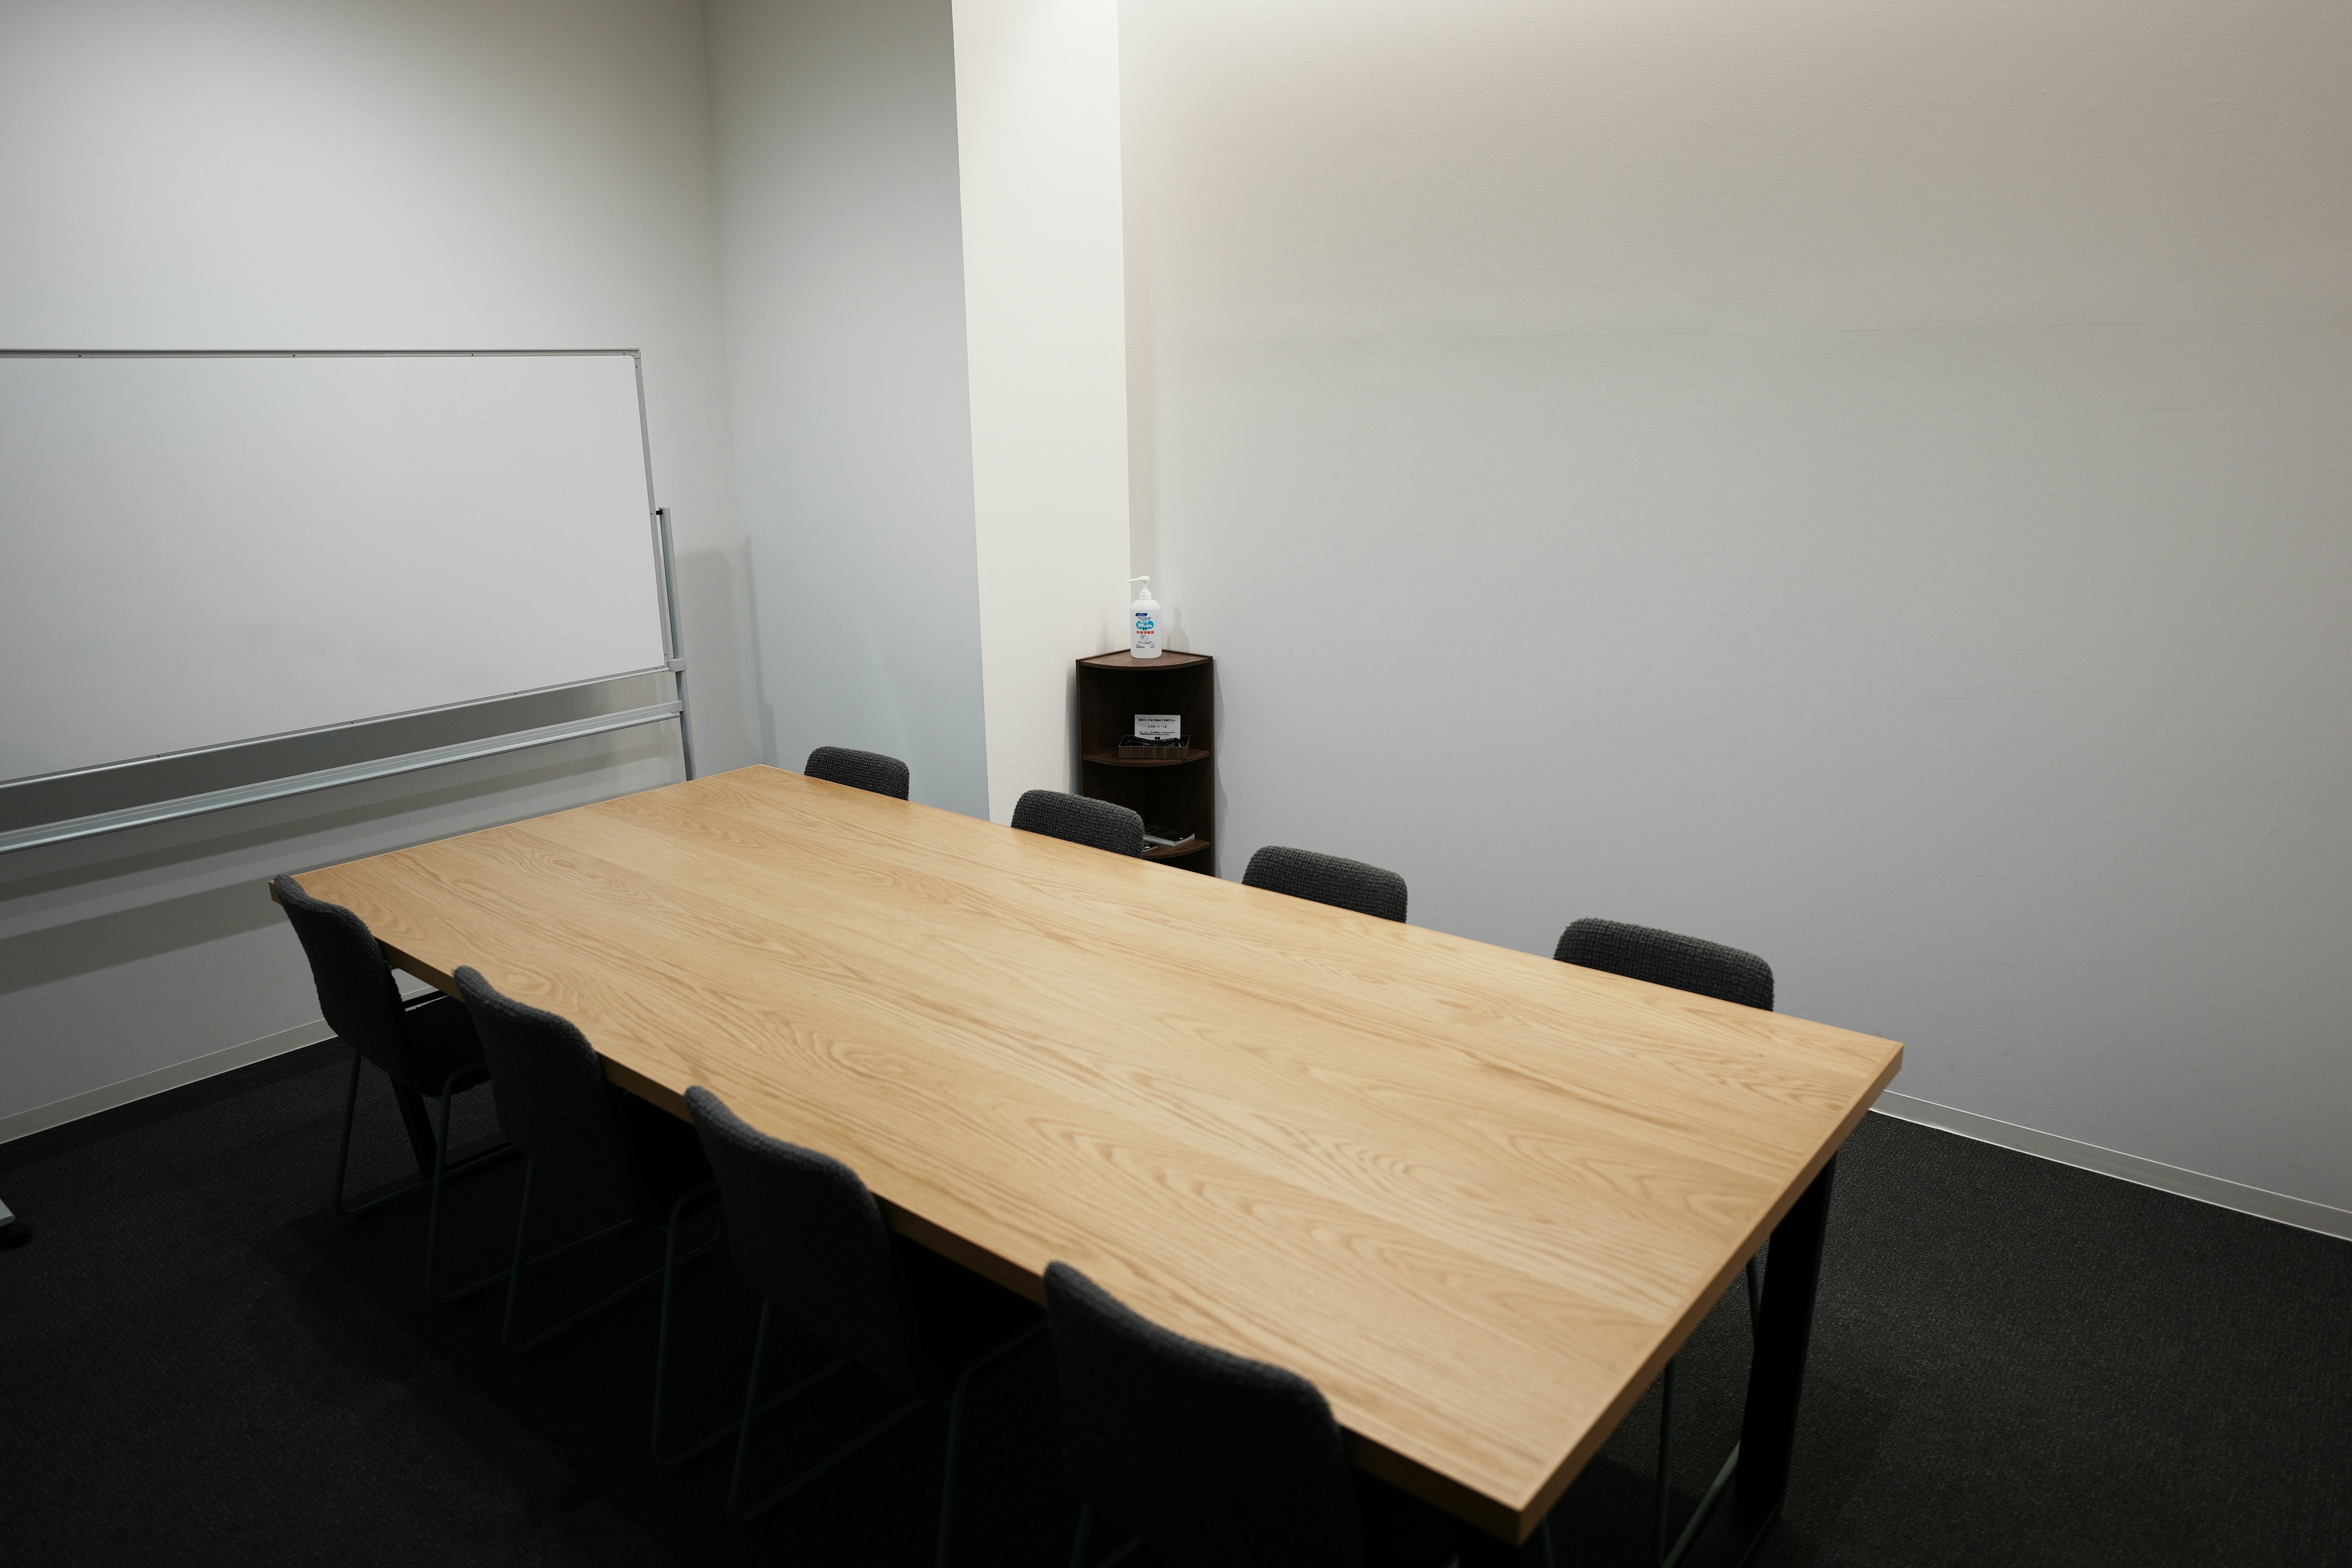 【TOGITOGI(トギトギ)】セミナーやワークショップに最適なコワーキング施設内の貸し会議室(会議室中)